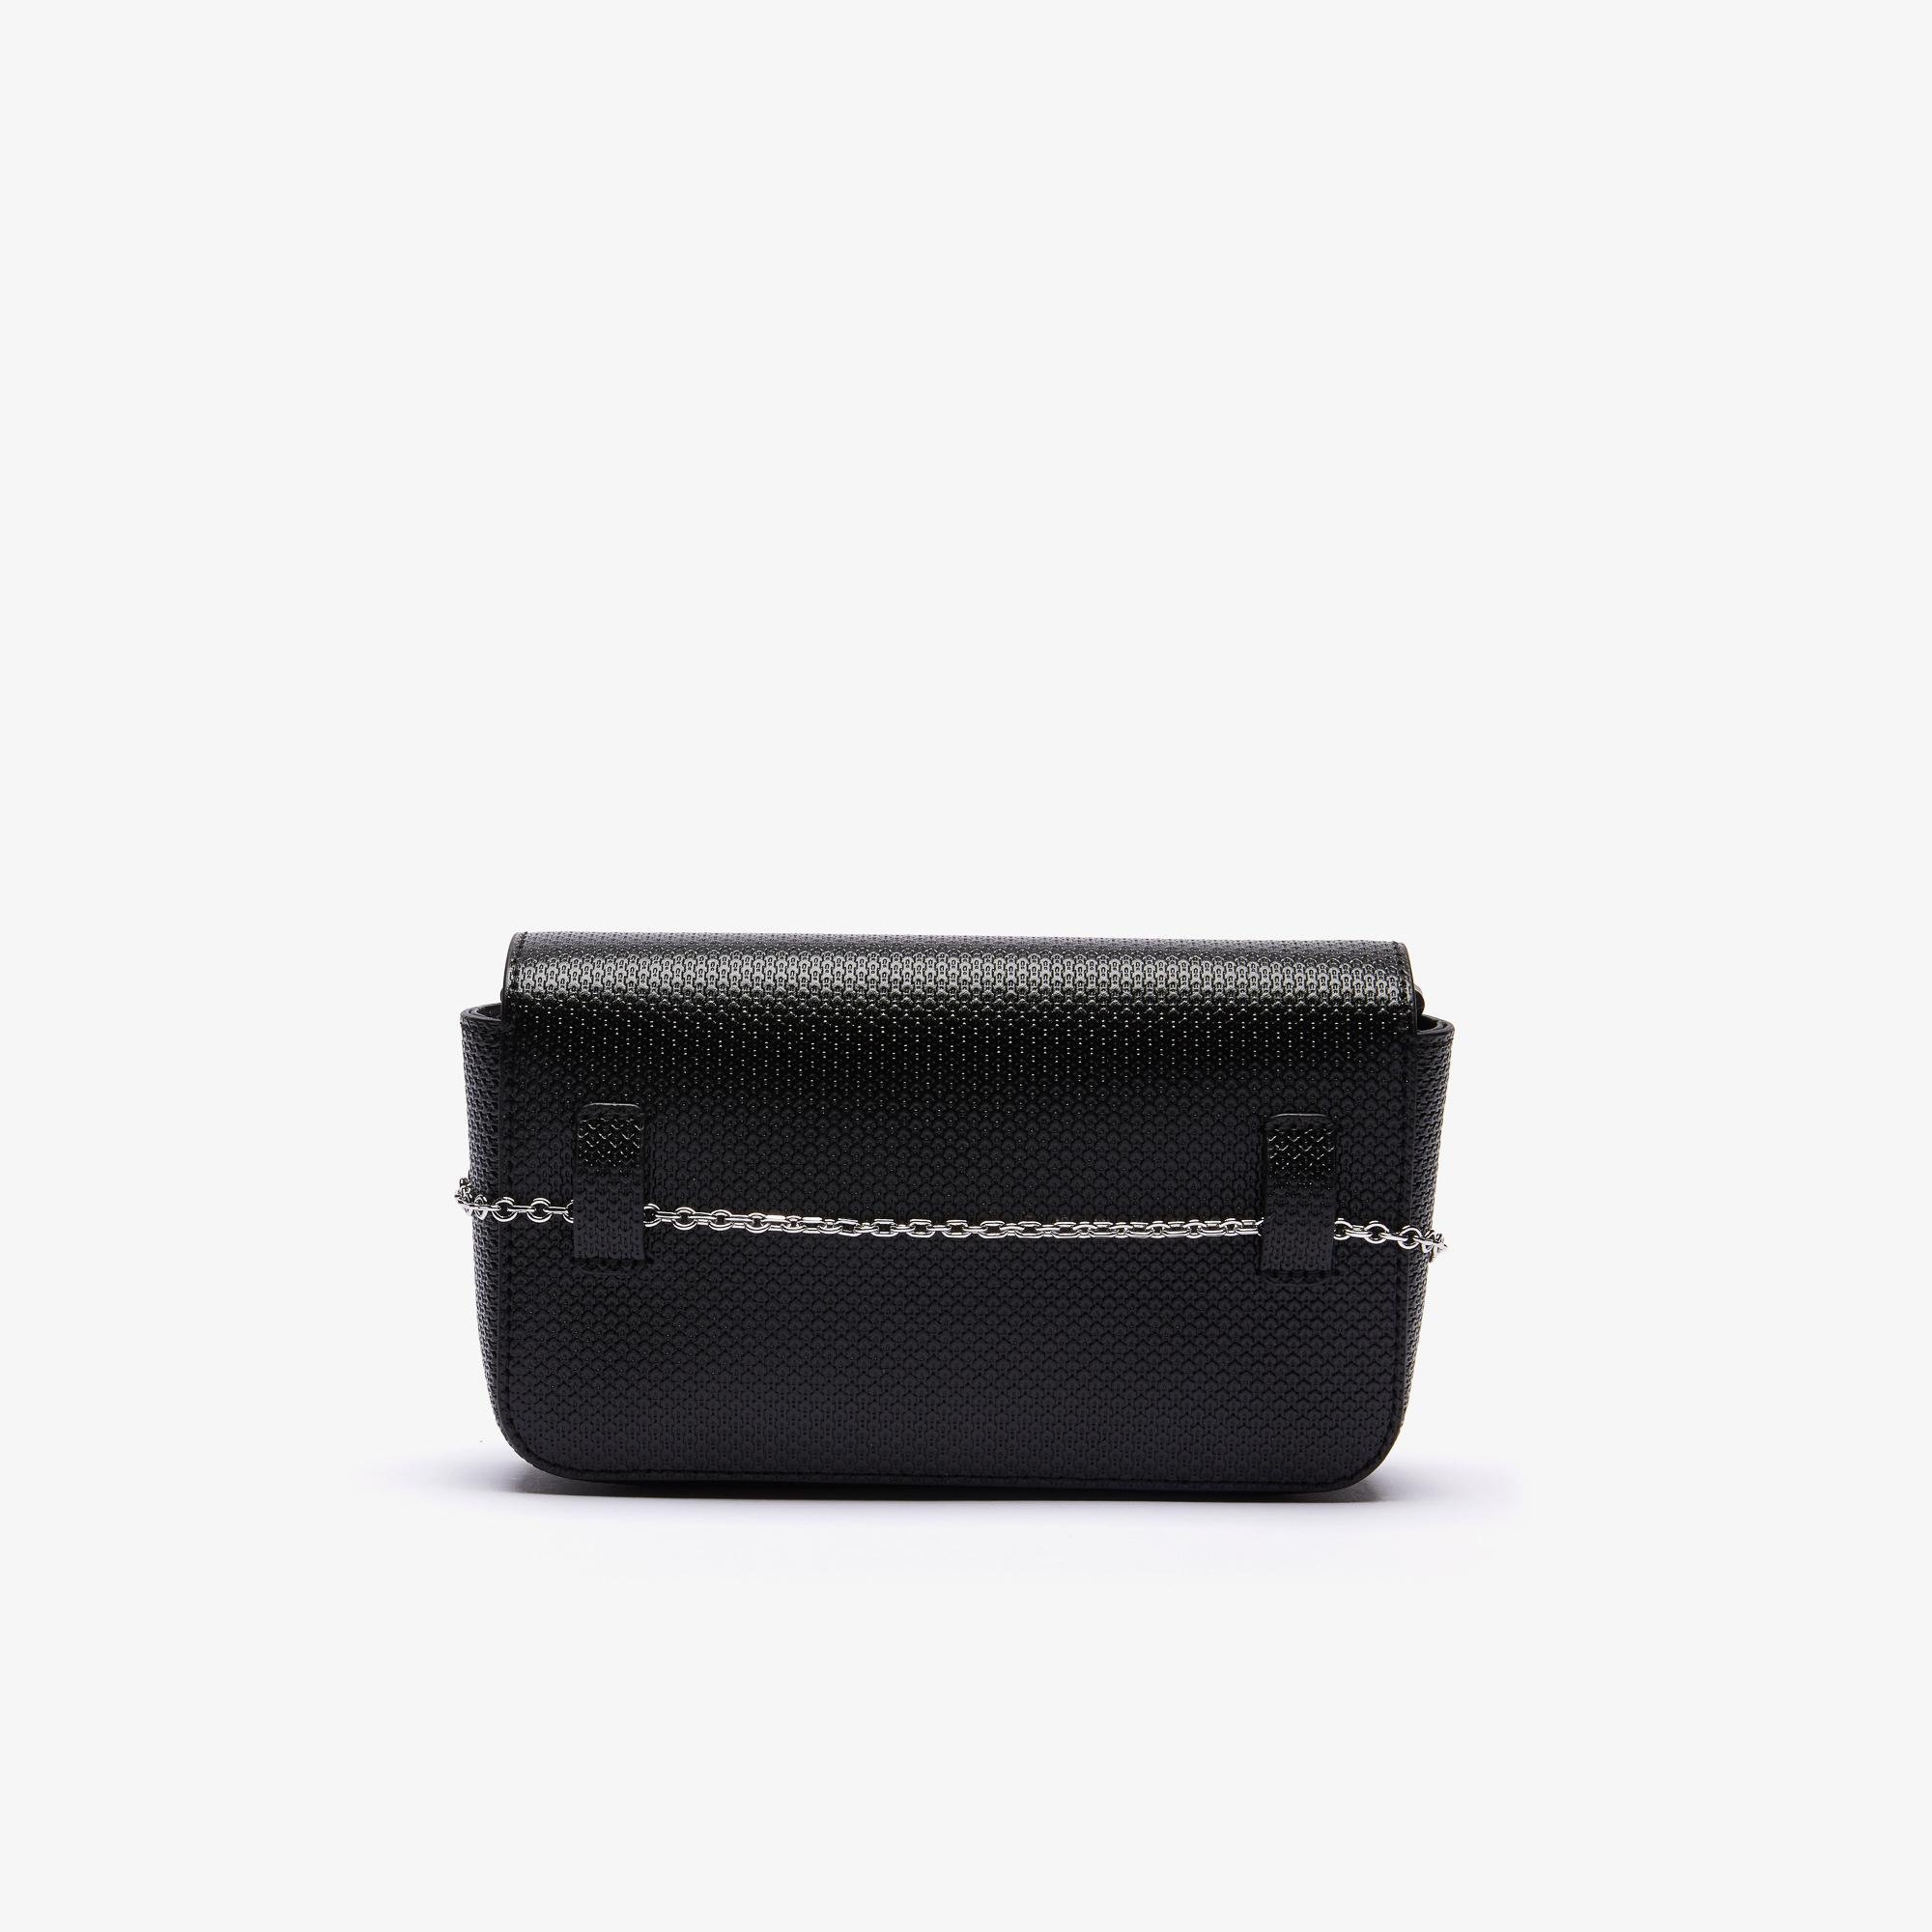 Lacoste Women’s Chantaco Piqué Leather Belt Bag